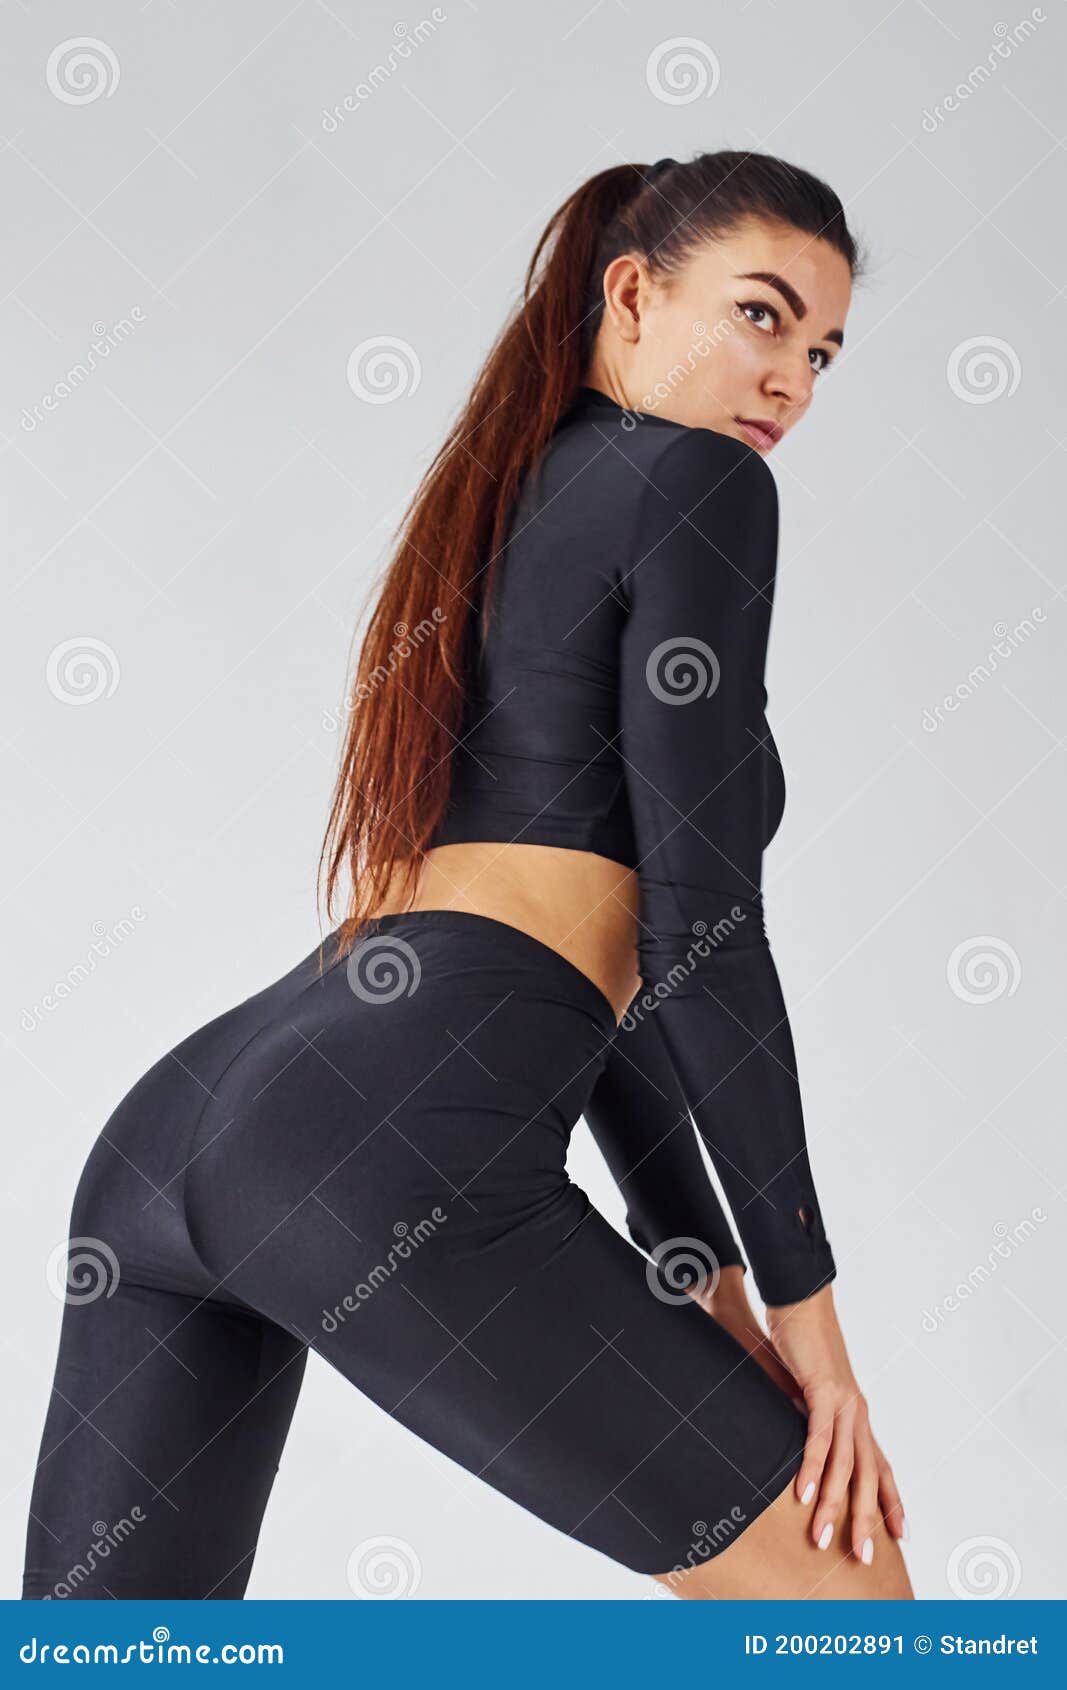 Girl Twerking In Yoga Pants